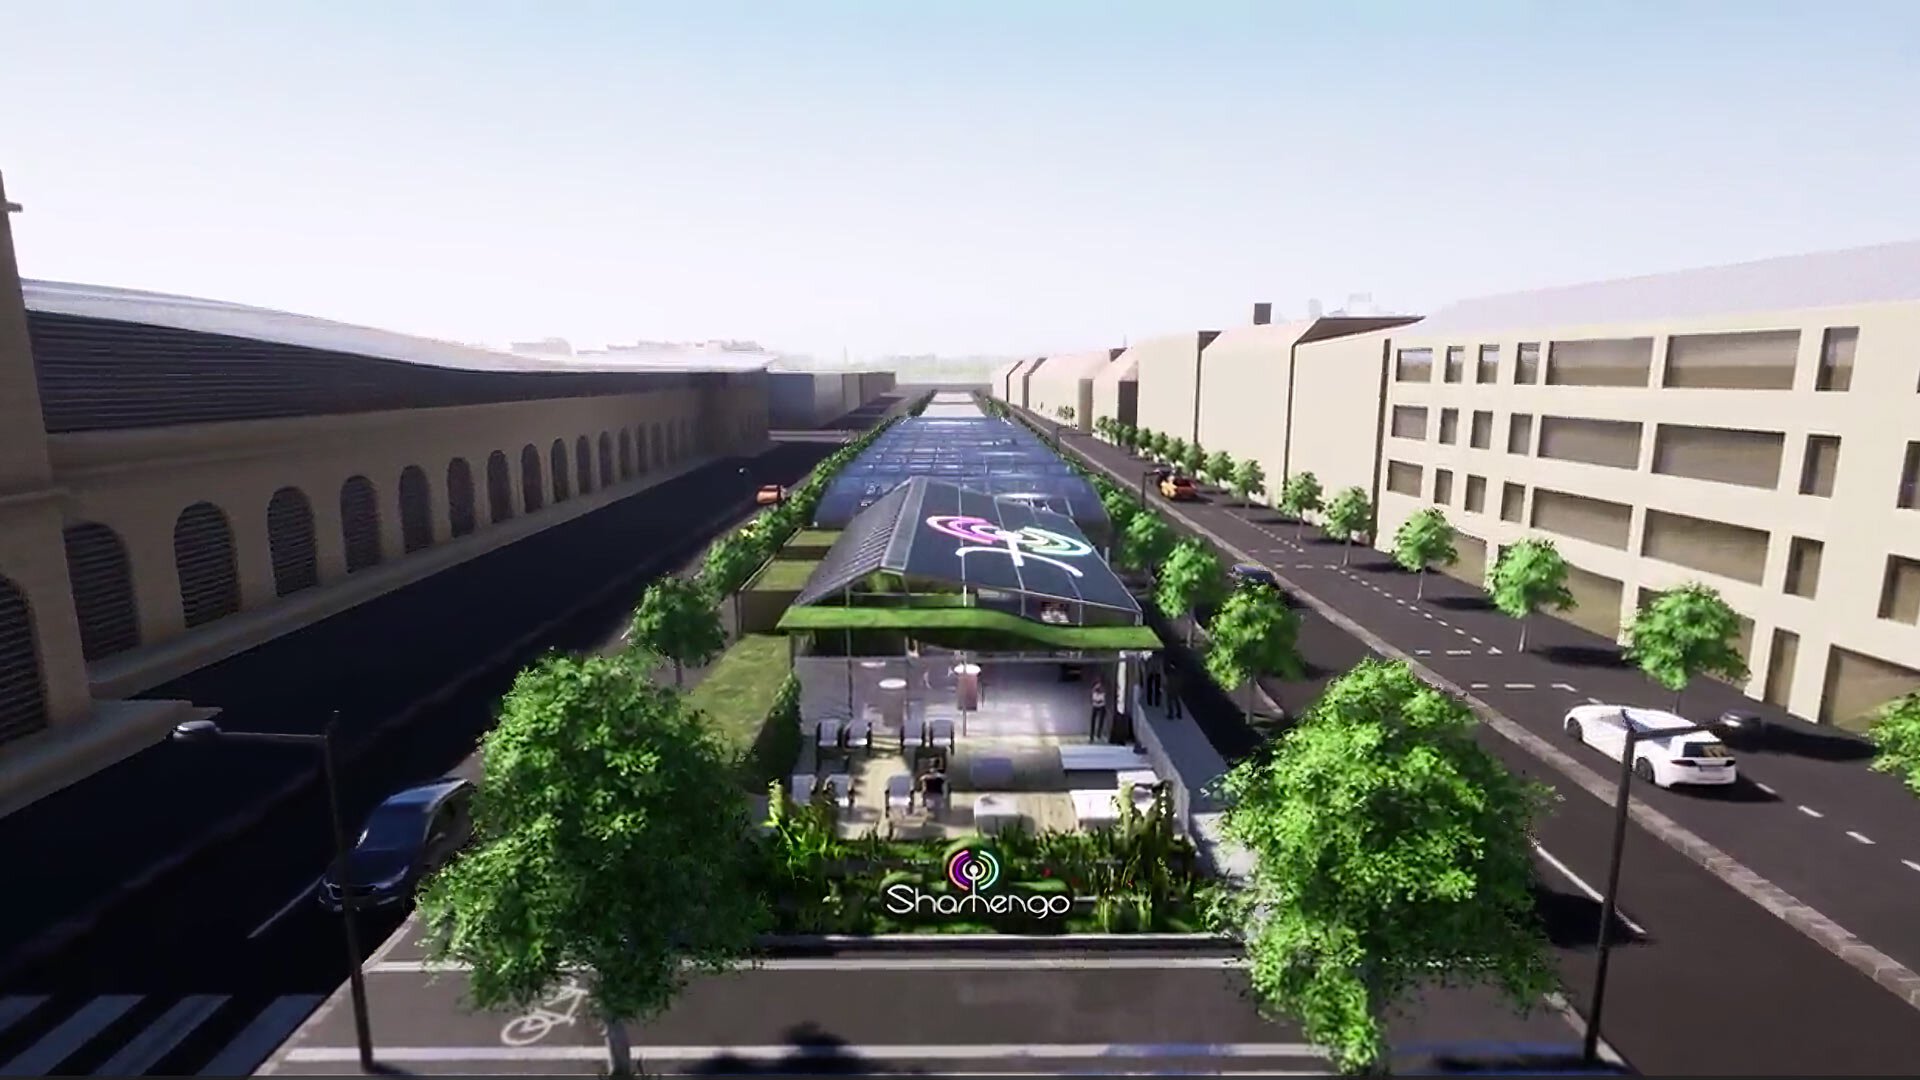 En 2020, les Allées Serr auraient dû ressembler à de grands bâtiments, dont le centre comporte un parking extérieur et un espace arboré.